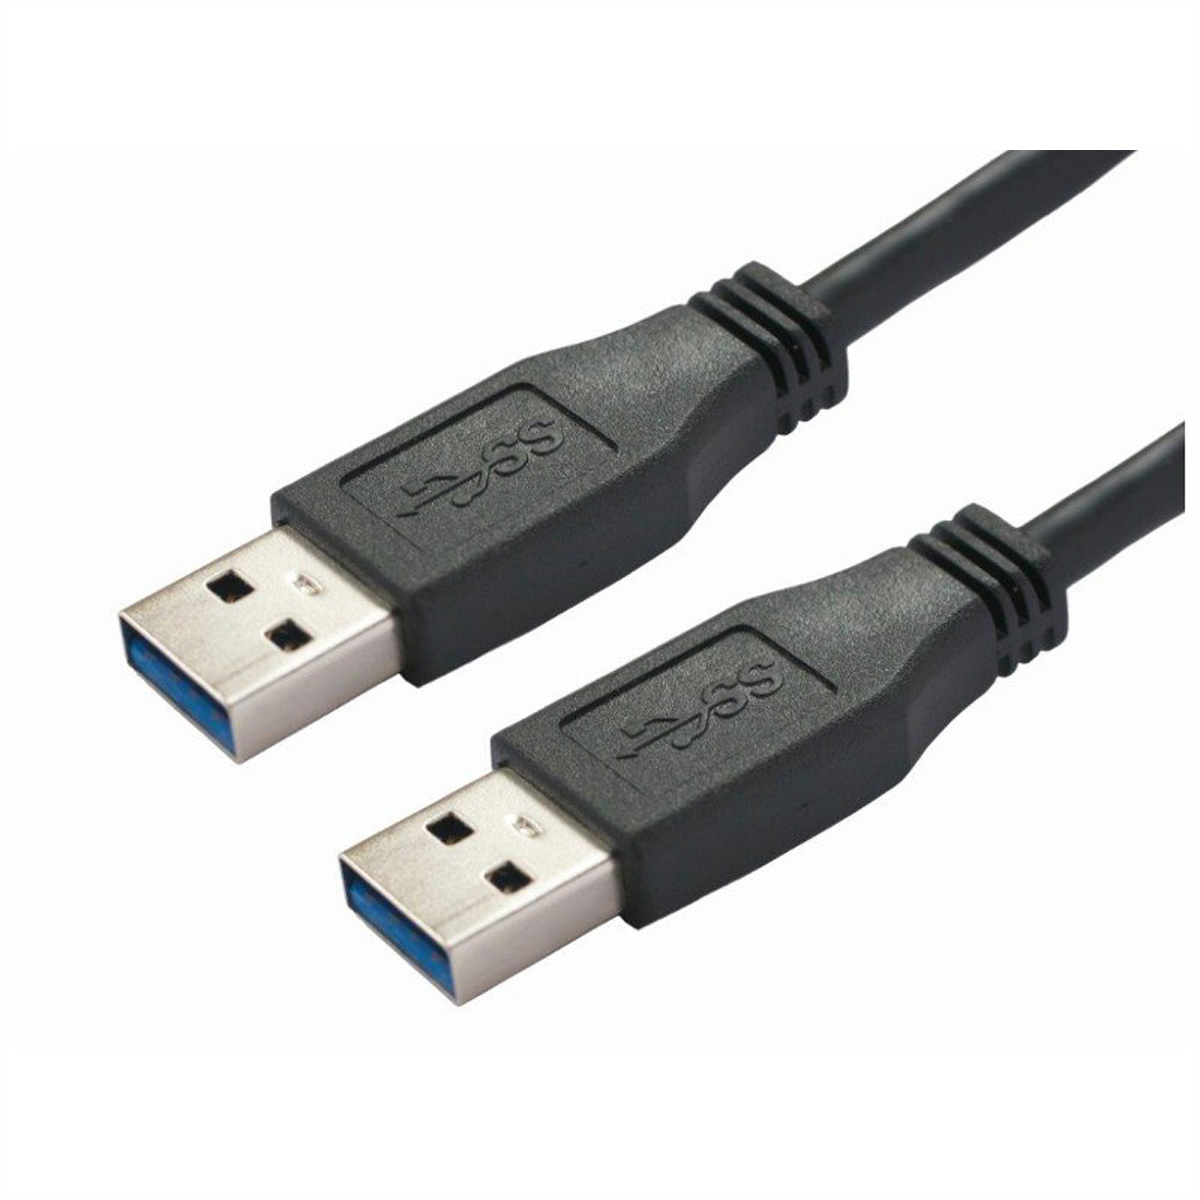 BACHMANN USB 3.0 Kabel A/A 1:1, schwarz, 1 m